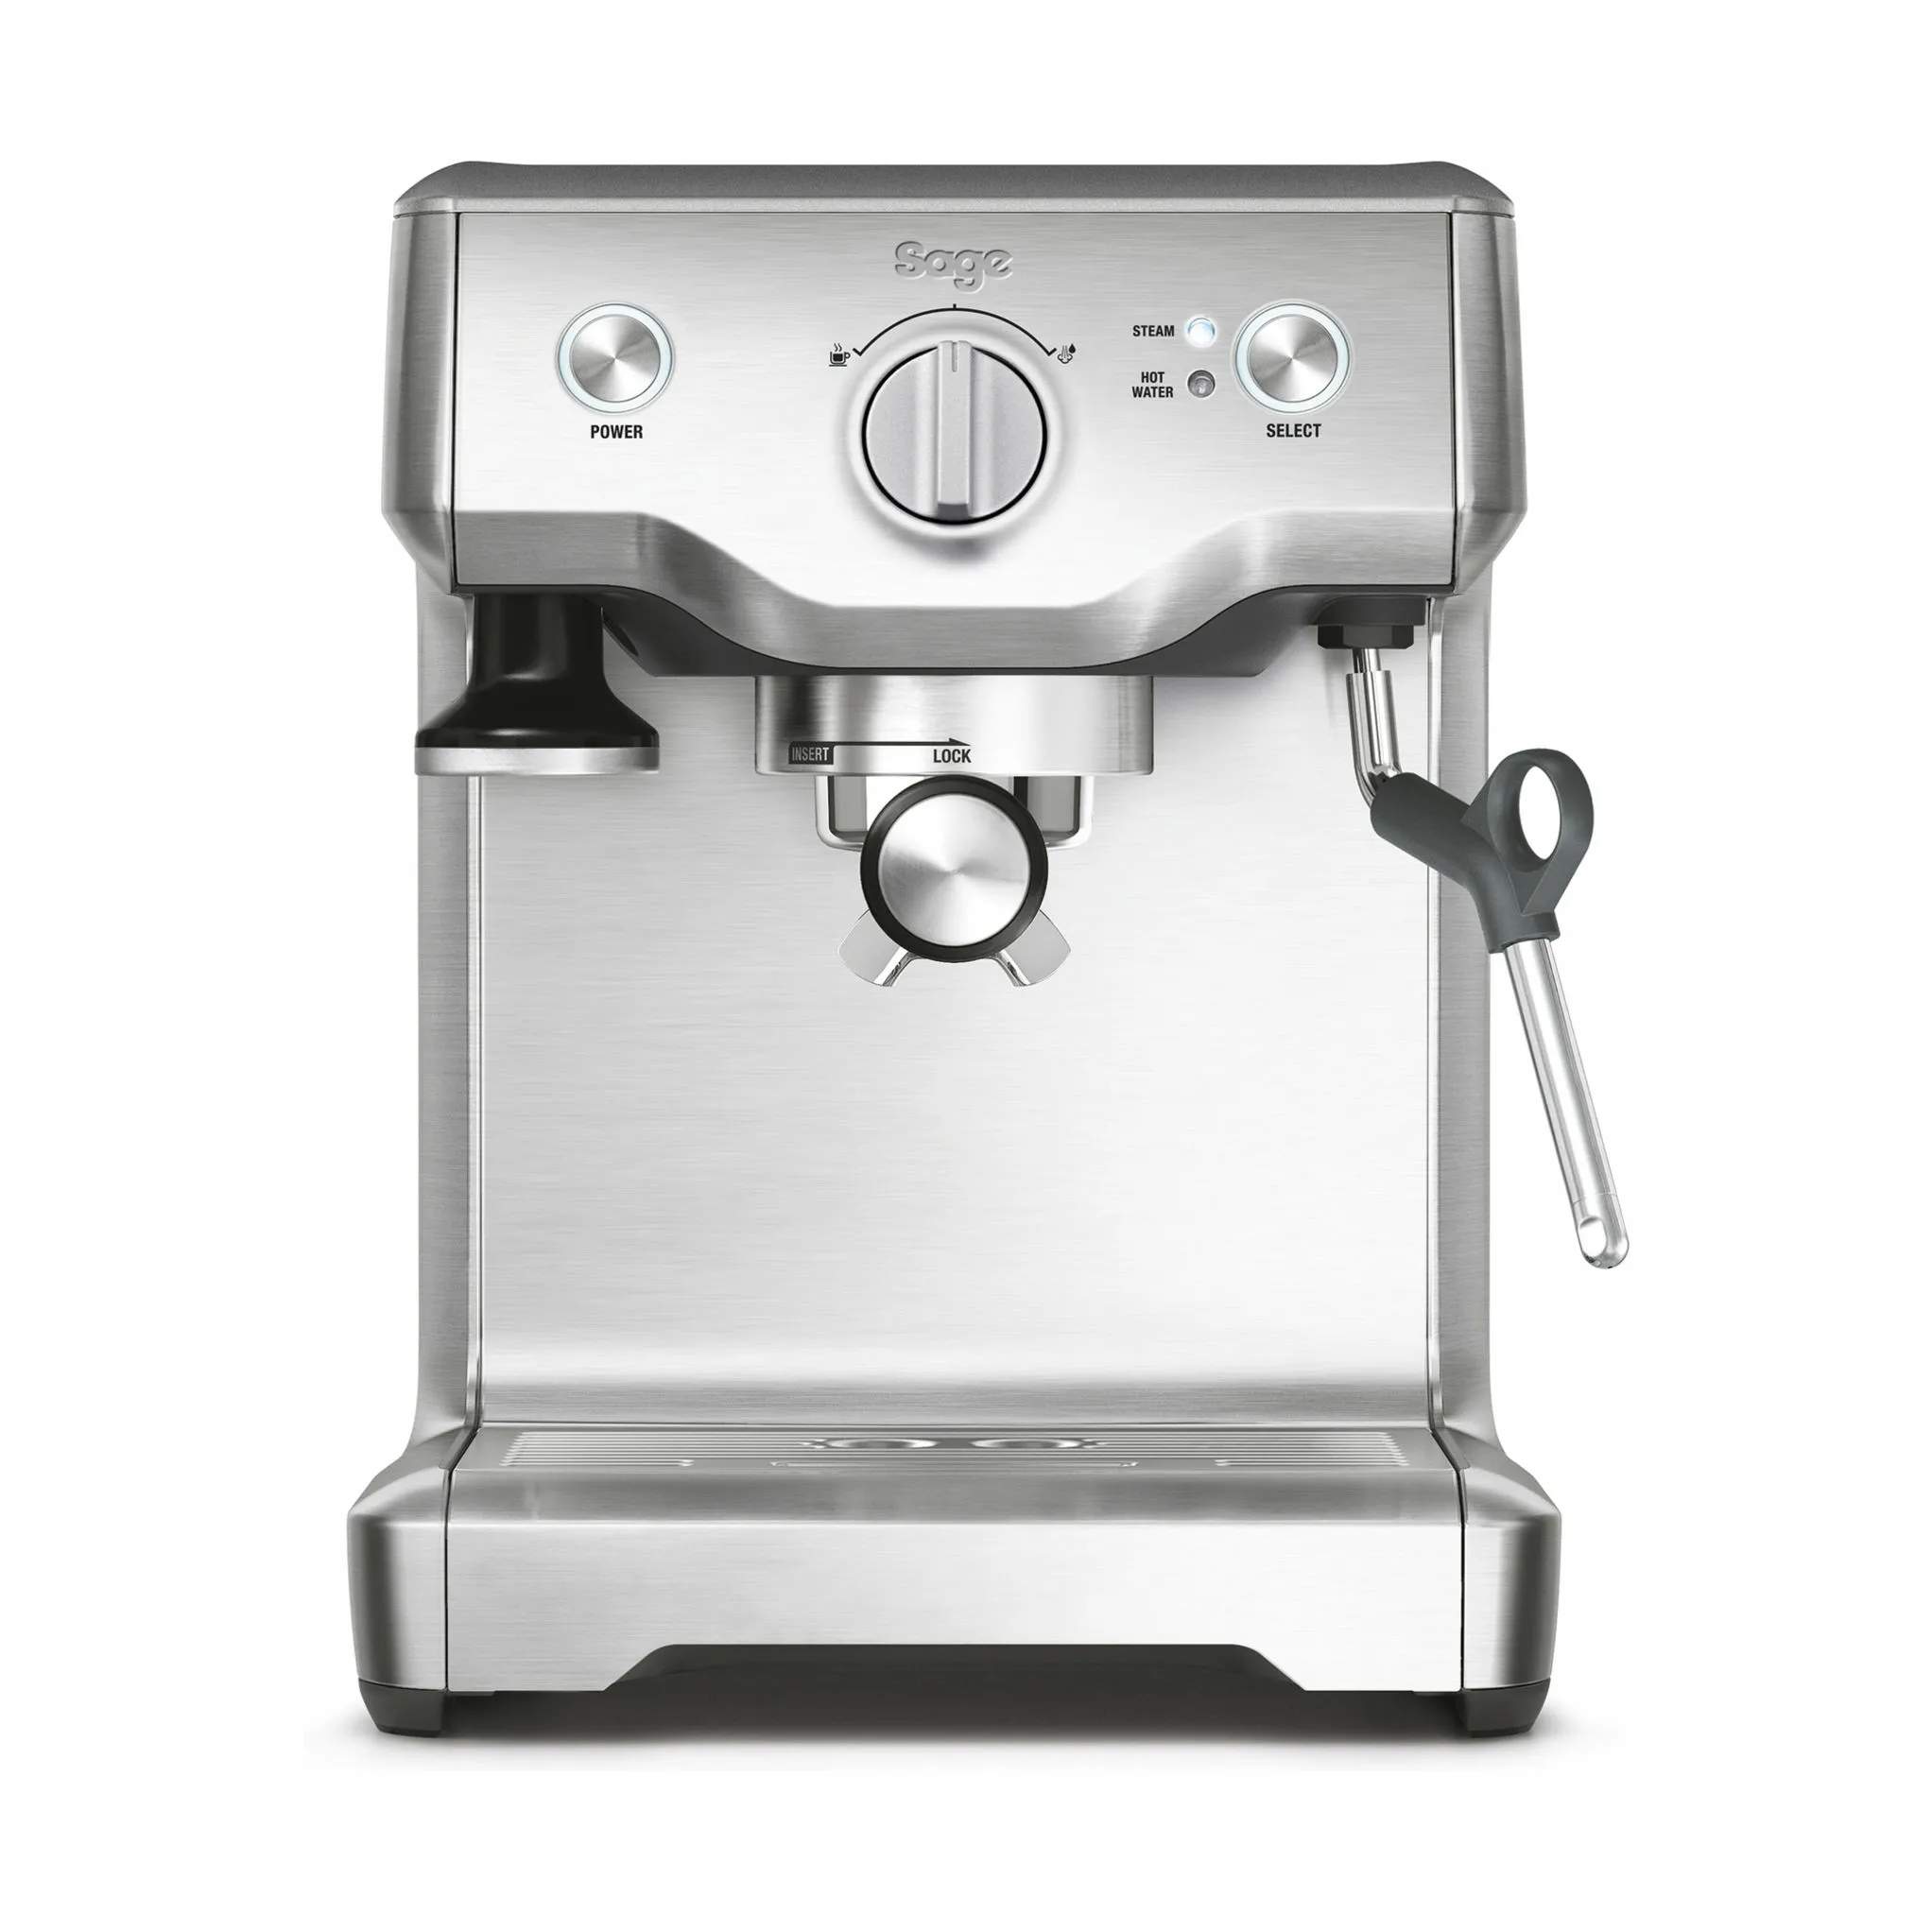 The Duo Temp Pro Espressomaskine